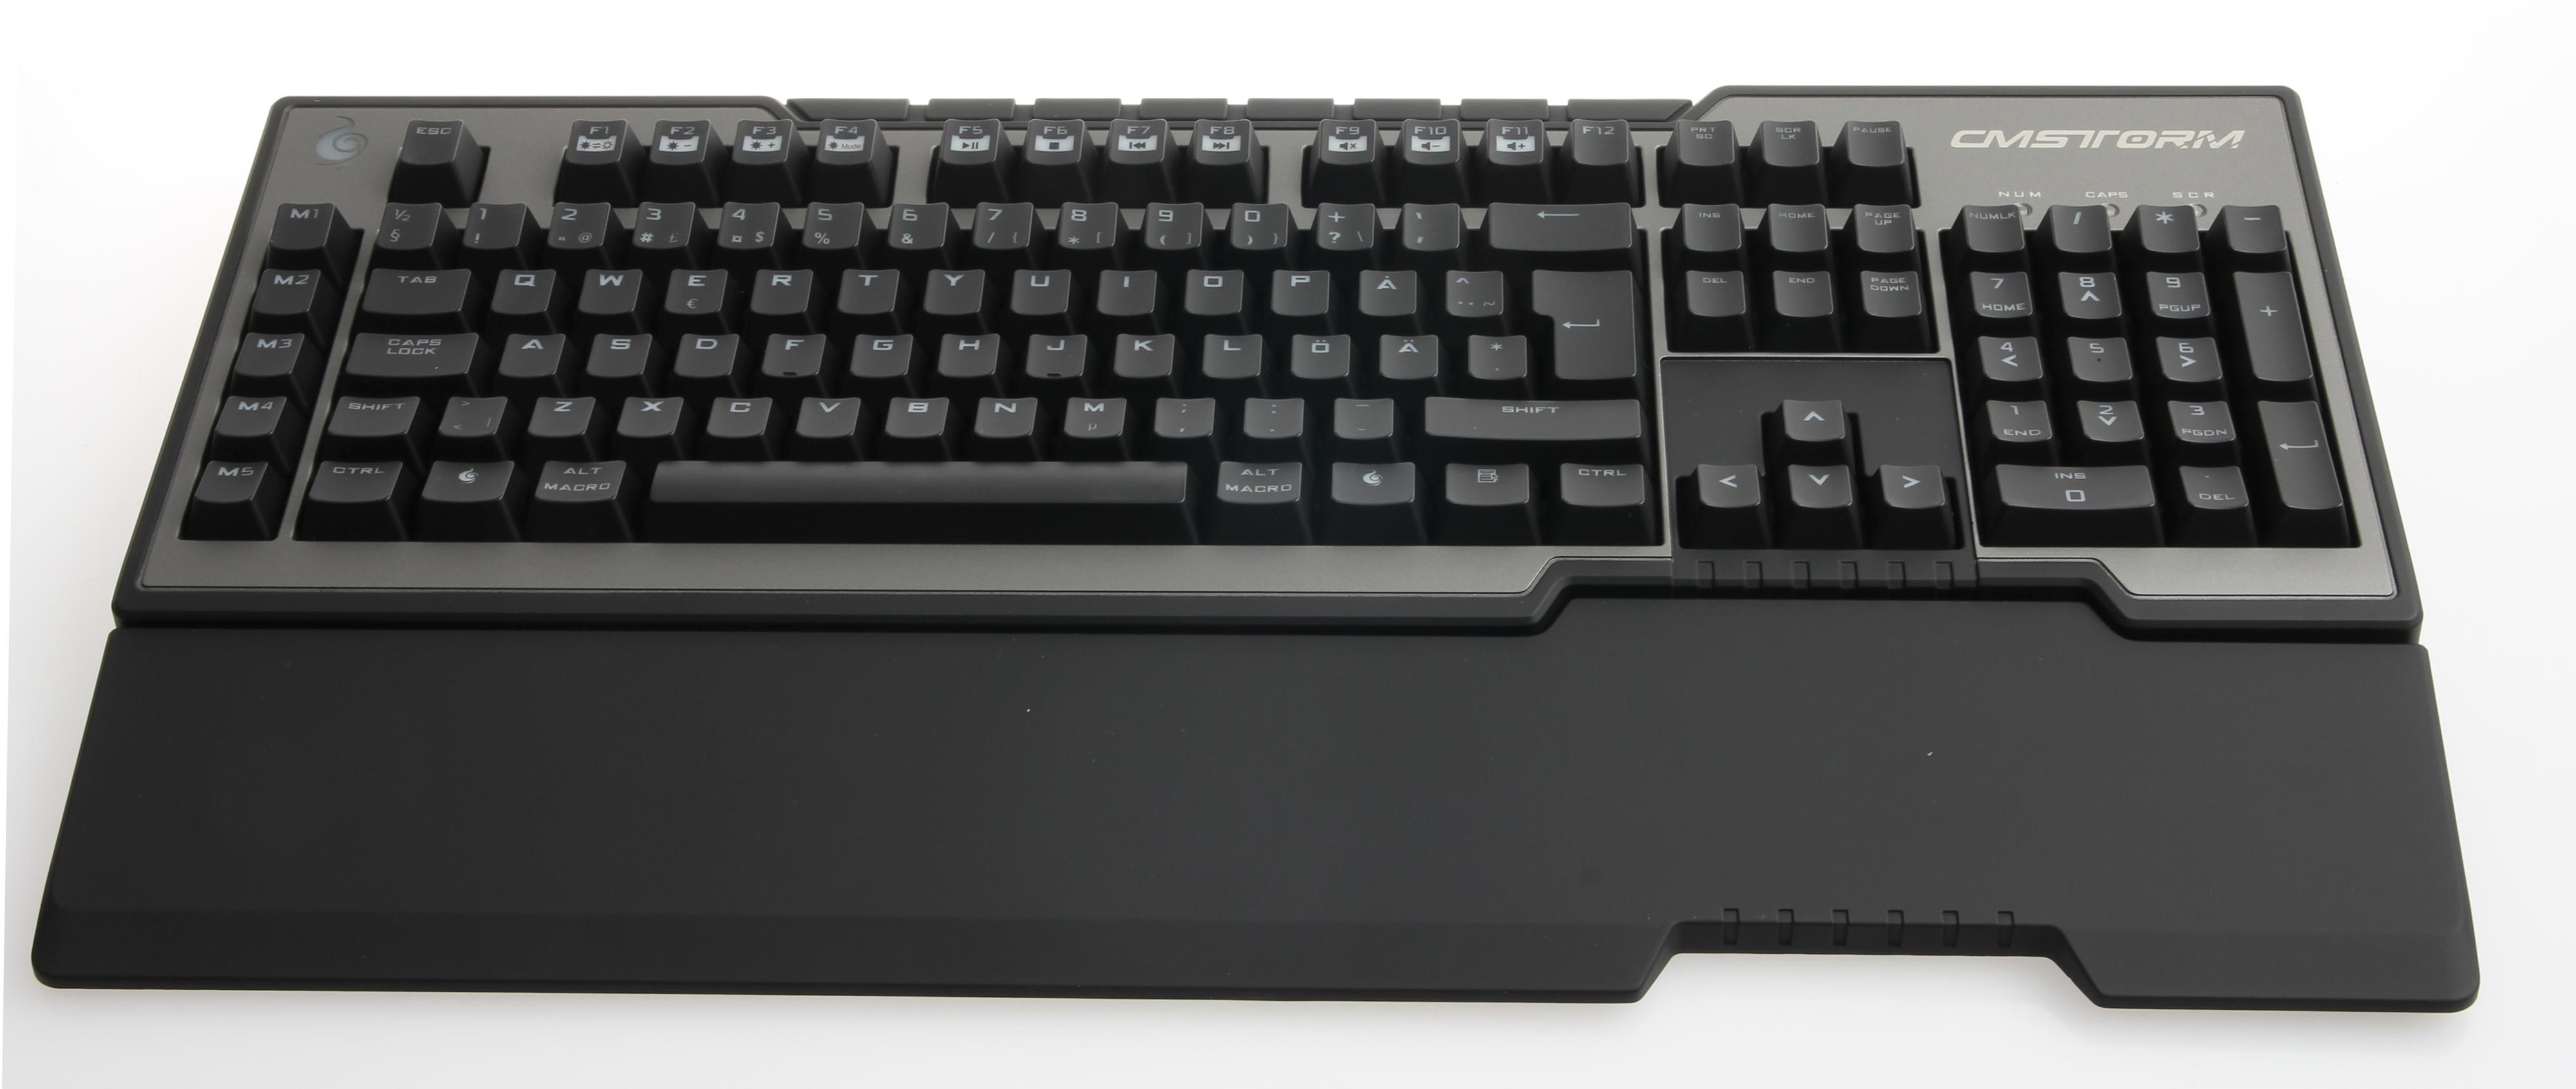 Cooler Master Storm Trigger er et ypperlig tastatur med svarte brytere. Foto: Niklas Plikk, Hardware.no